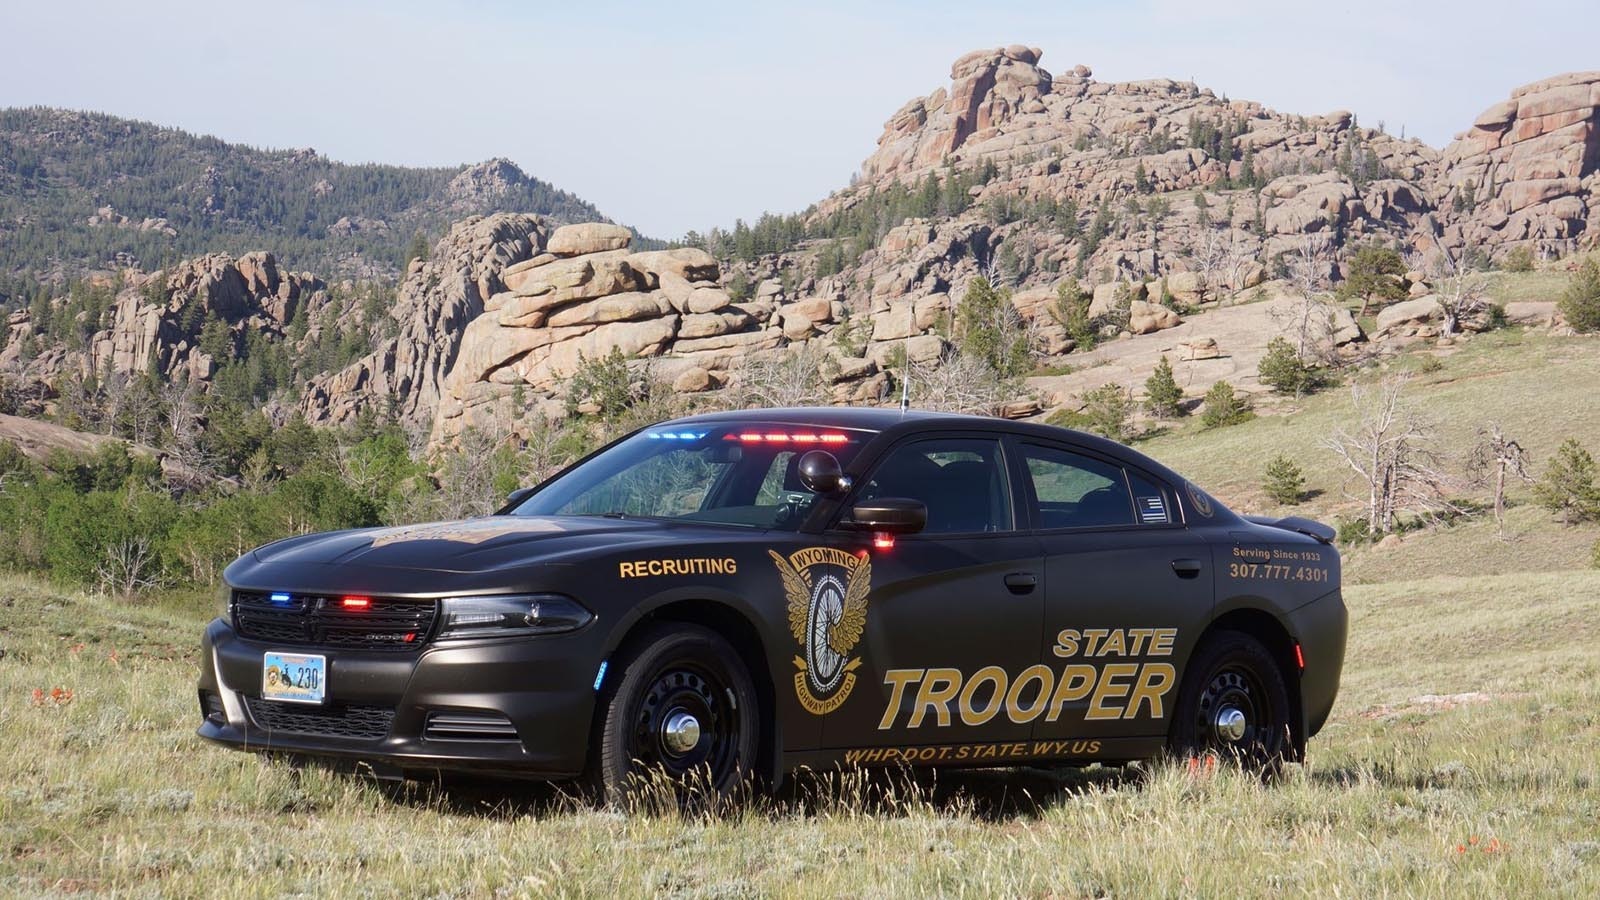 Wyoming Highway Patrol 2 6 26 24